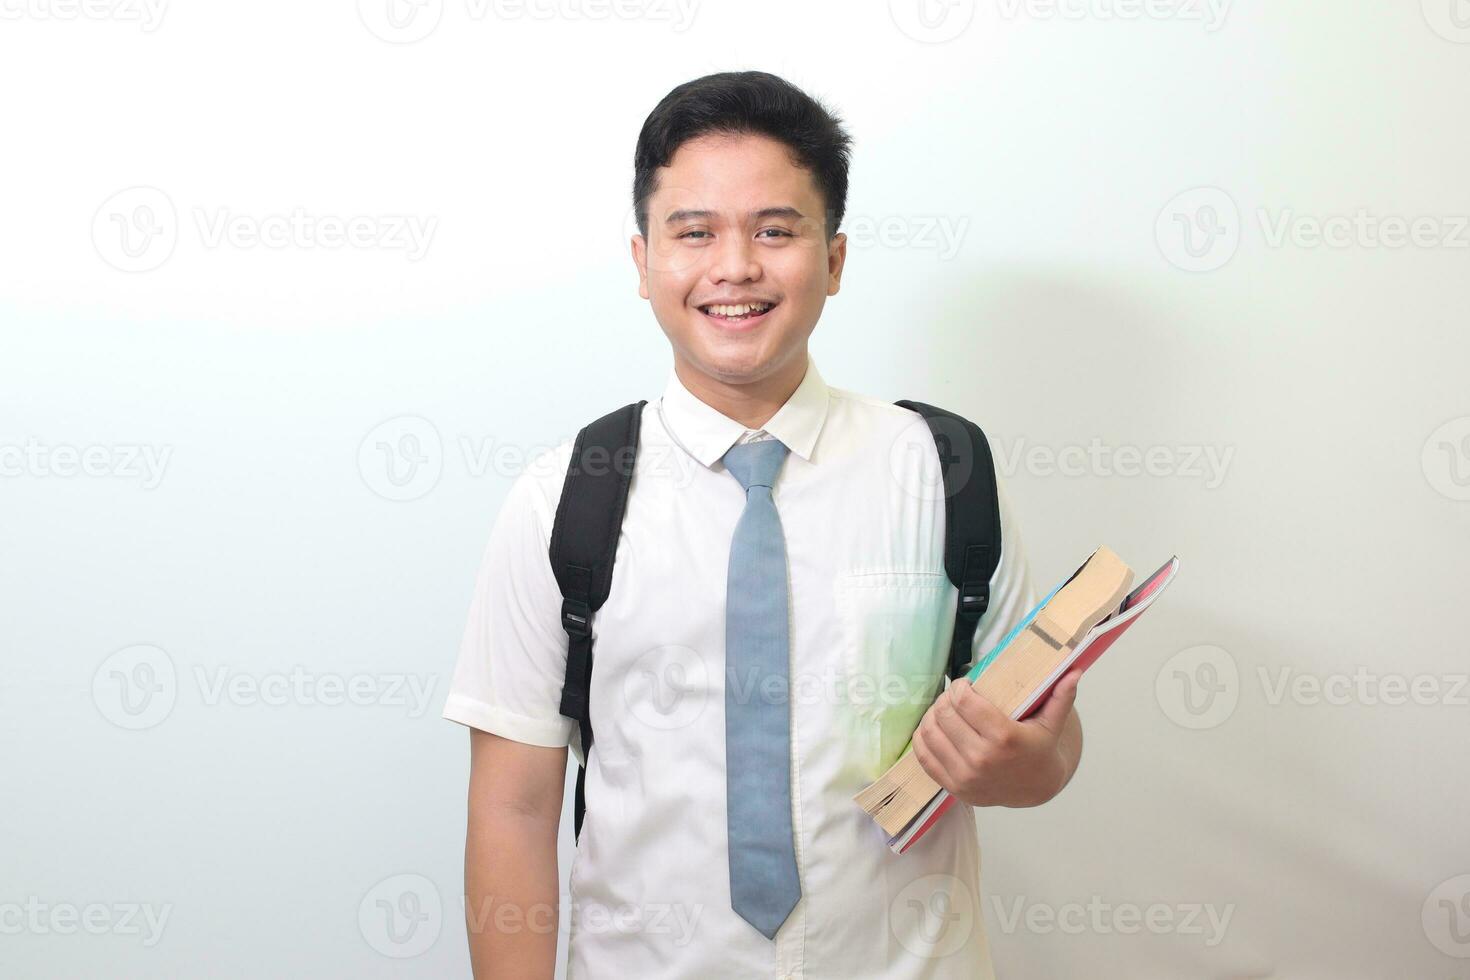 indonésien Sénior haute école étudiant portant blanc chemise uniforme avec gris attacher en portant certains livres, souriant et à la recherche à caméra. isolé image sur blanc Contexte photo